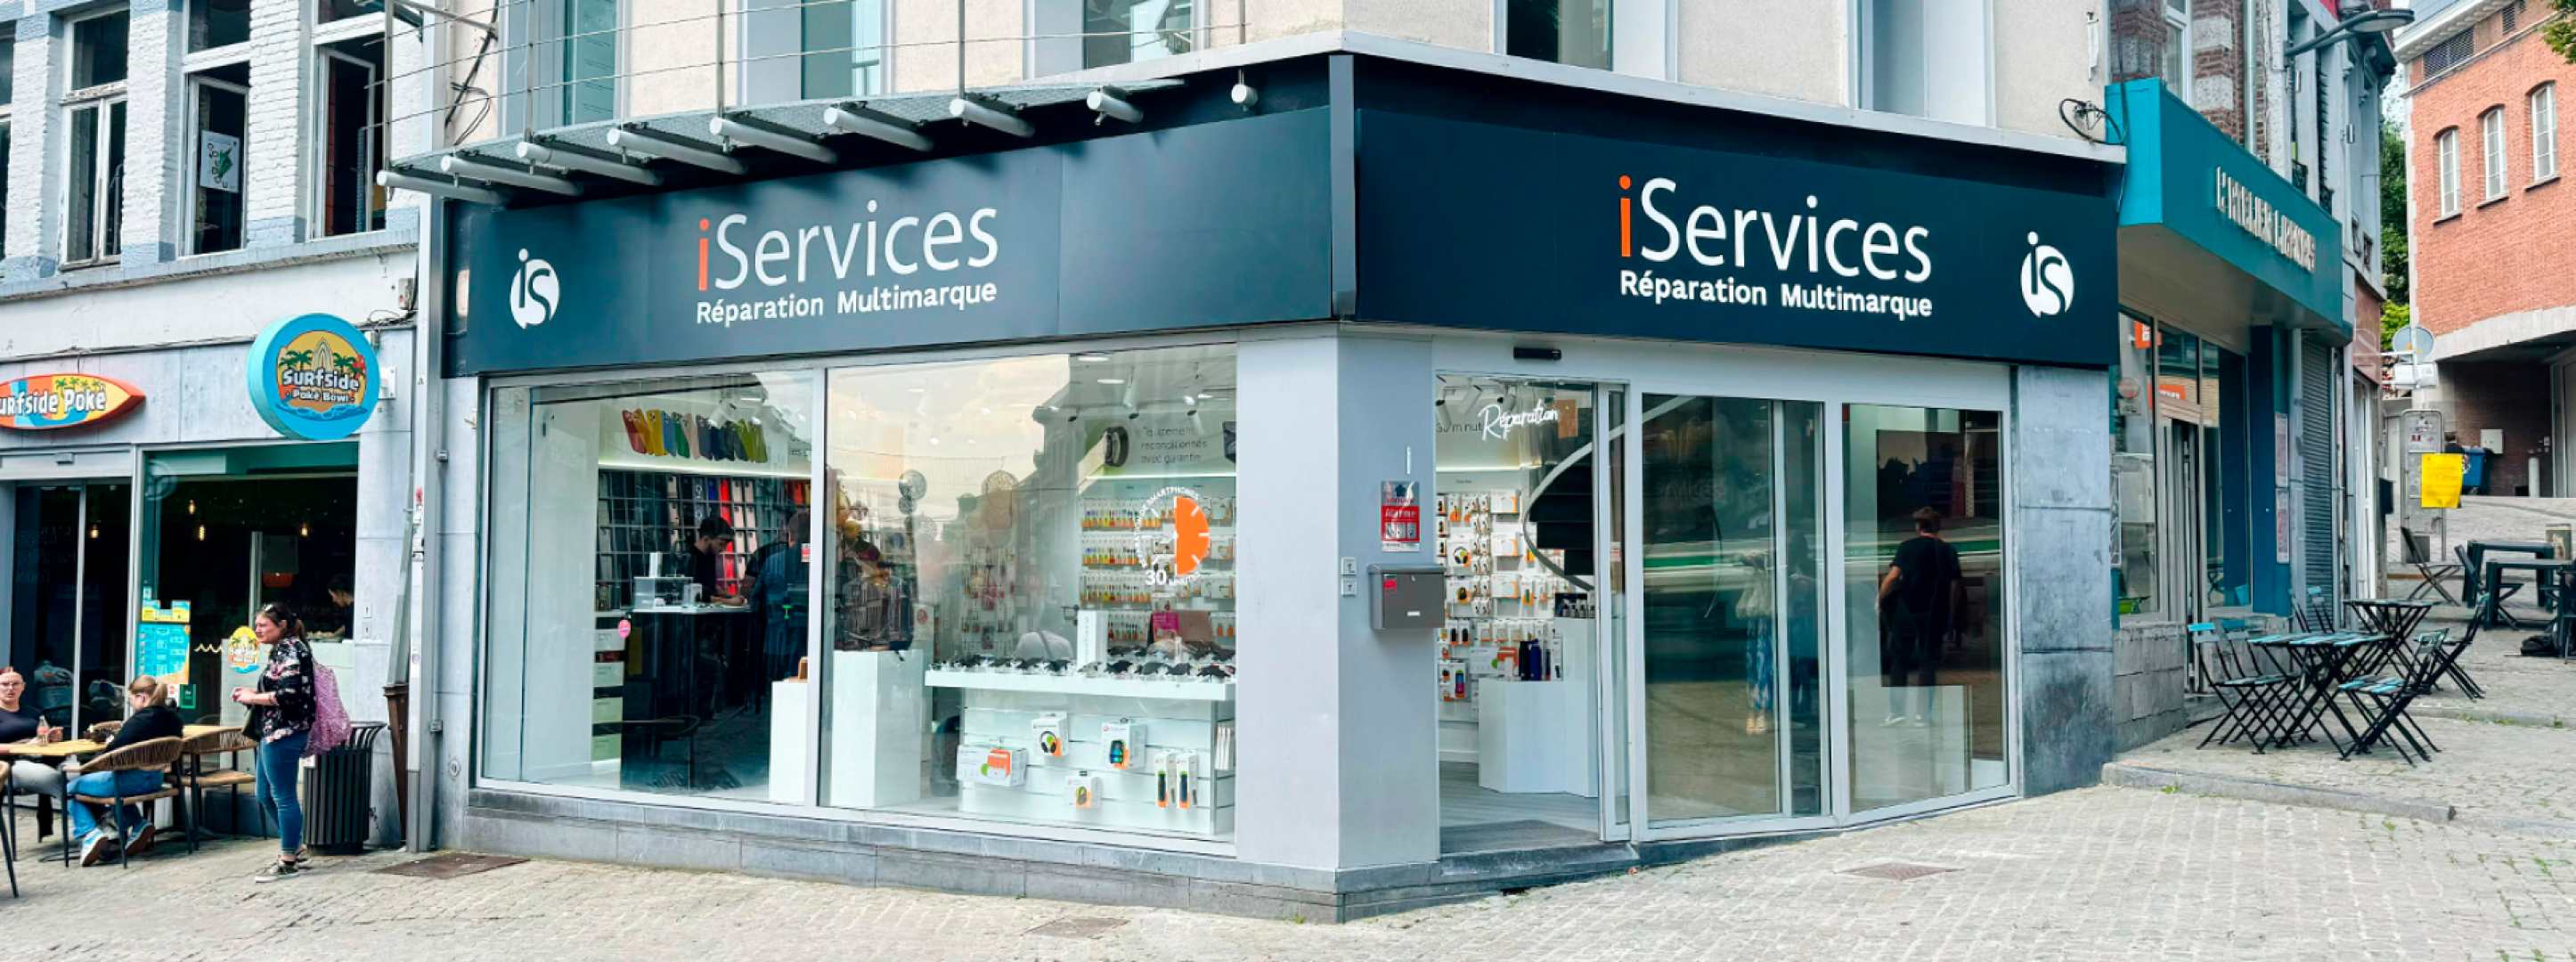 iServices ouvre un magasin à Mons